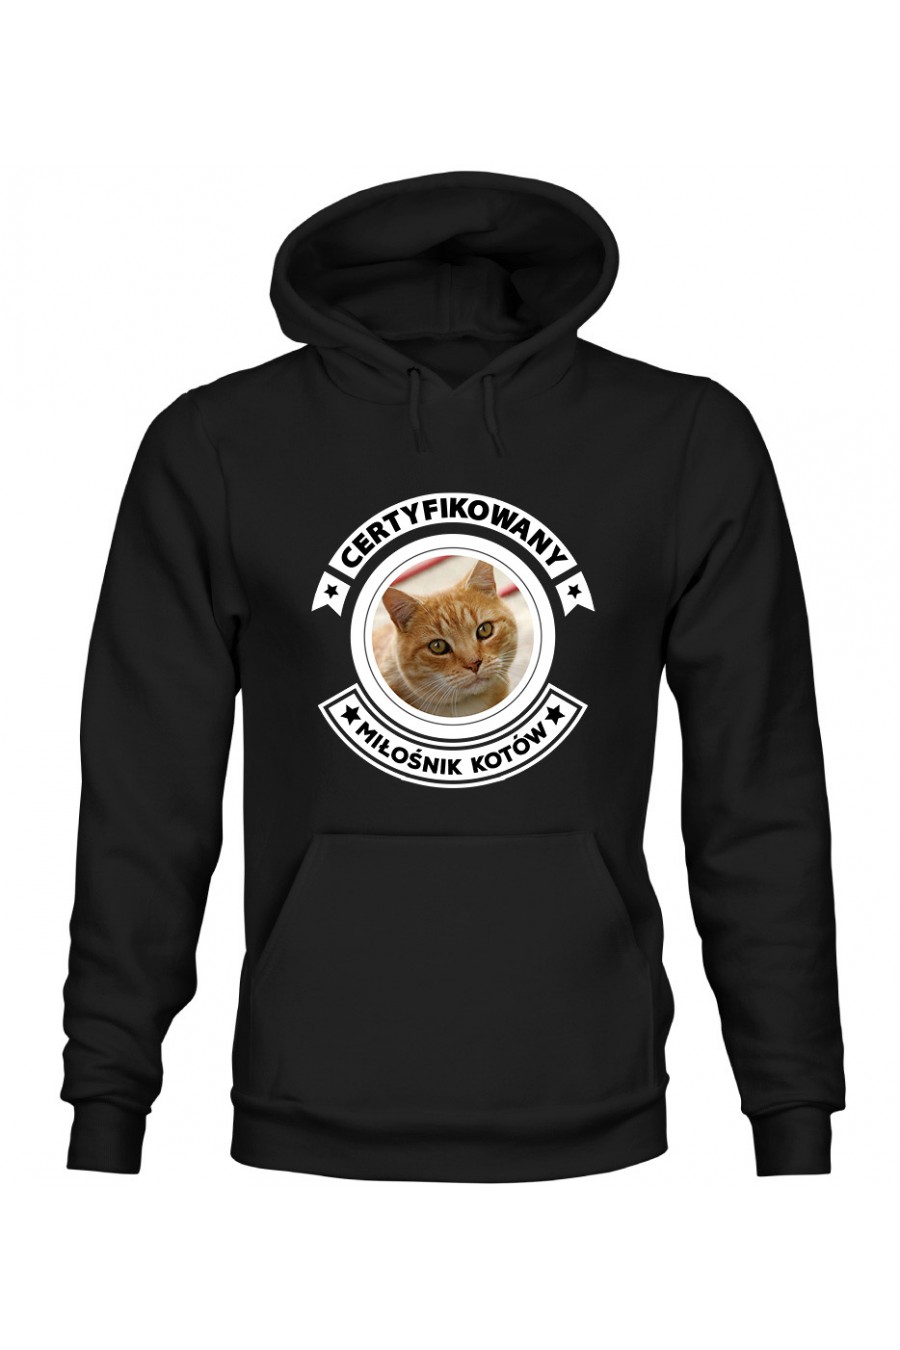 Bluza z Kapturem Męska Certyfikowany Miłośnik Kotów